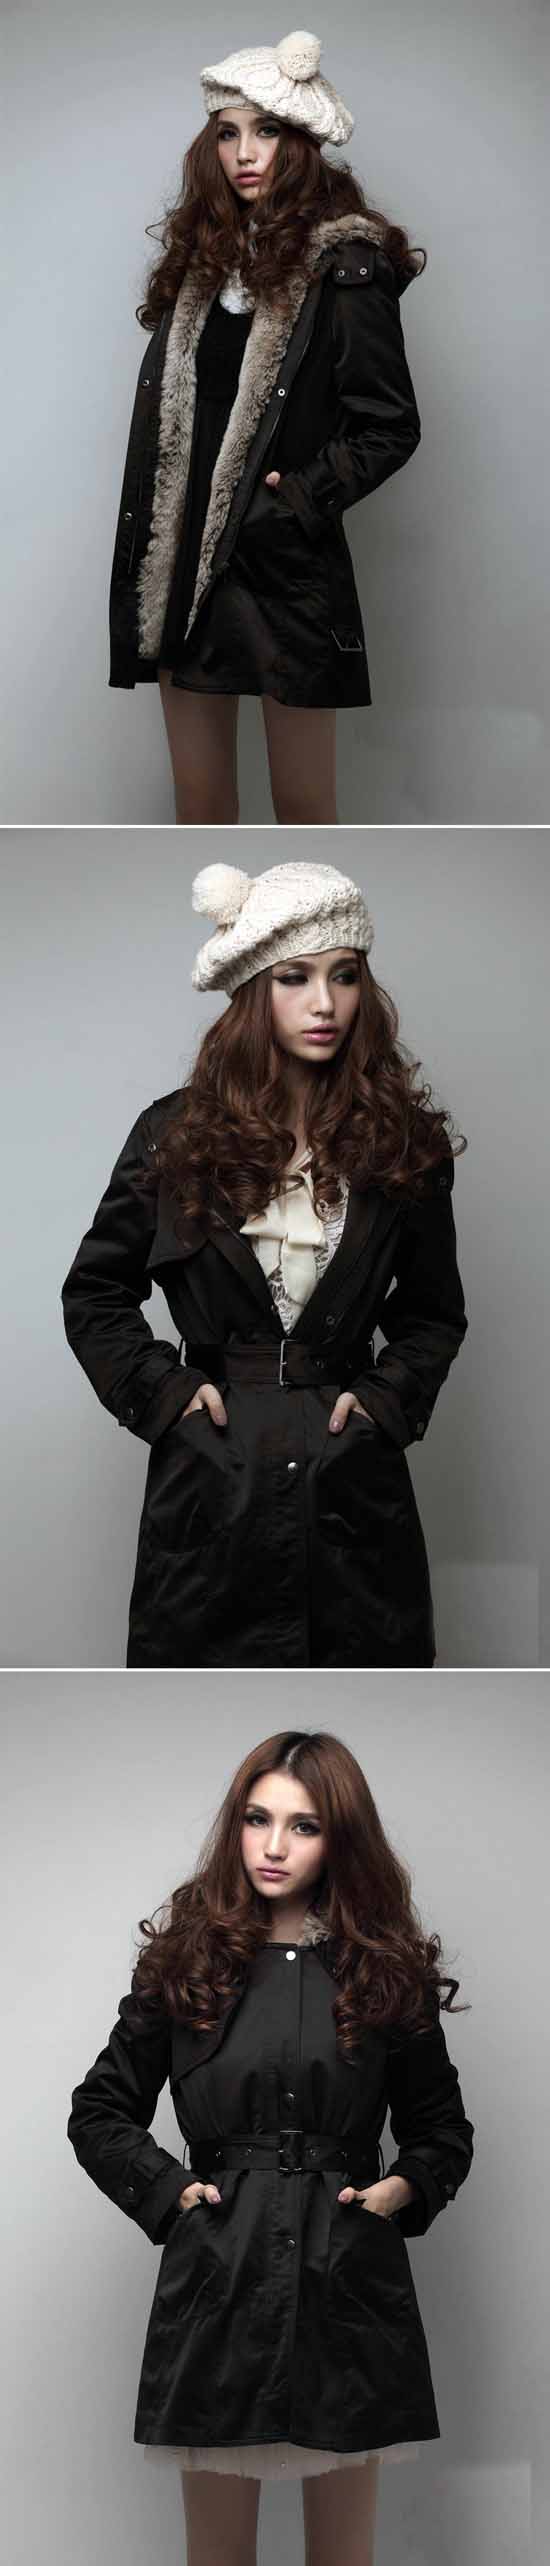 เสื้อโค้ท แฟชั่นเกาหลีกันหนาวตัวยาวมีฮู้ดแต่งเฟอร์สวยหรู นำเข้า ไซส์S-XXXL สีดำ - พรีออเดอร์SJ1325 ราคา2100บาท